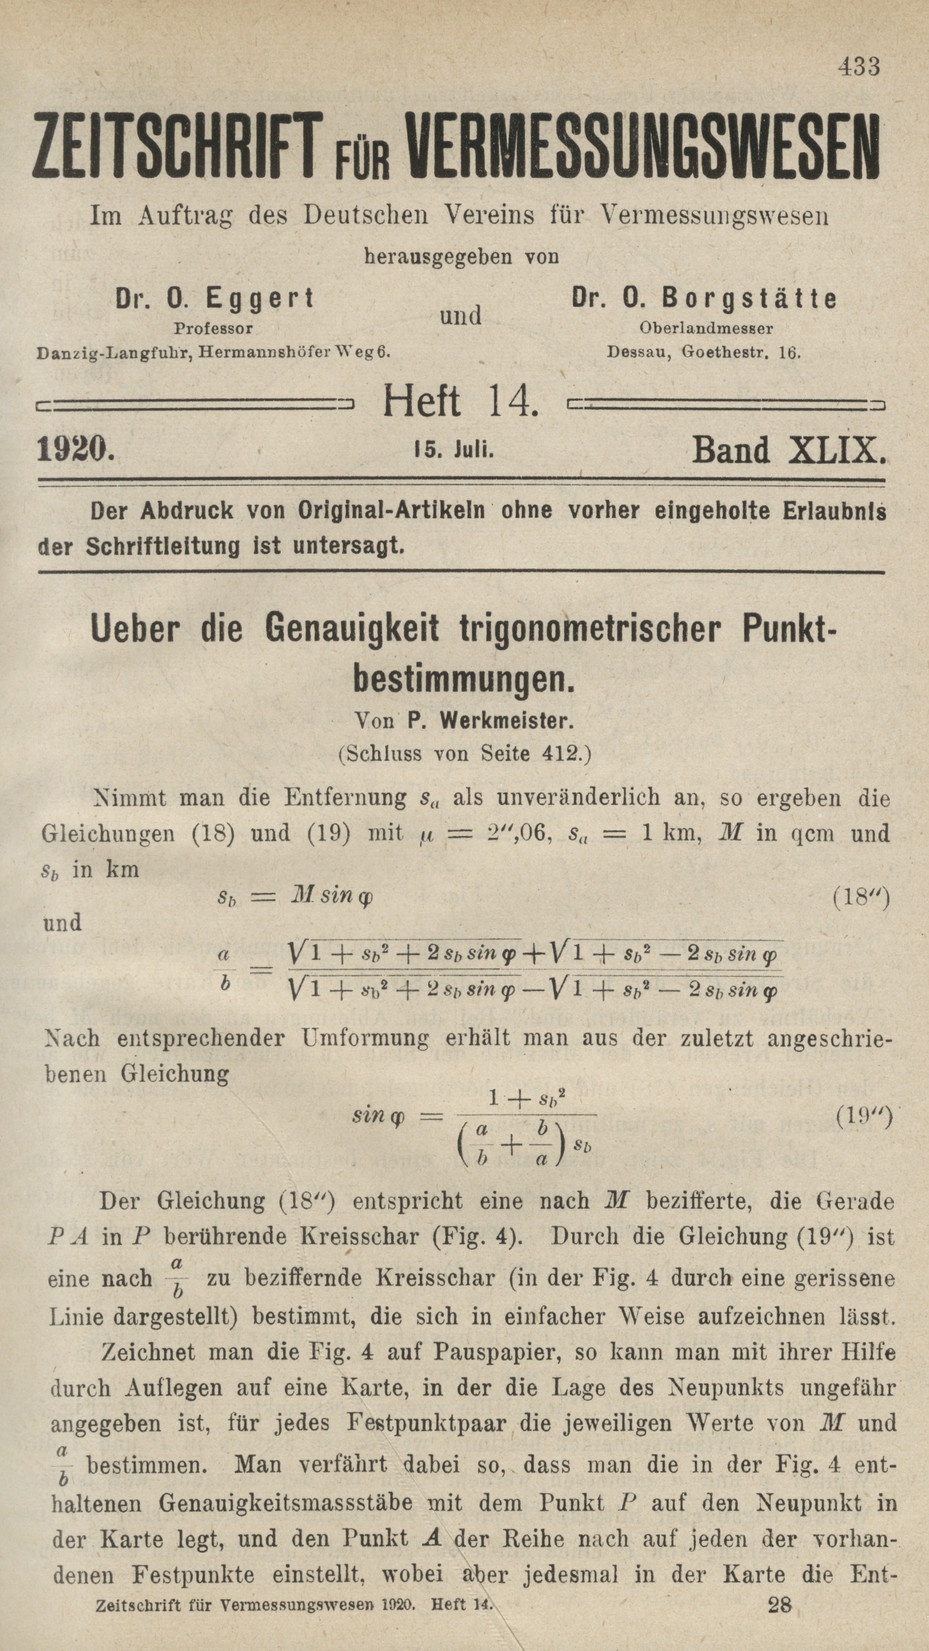 Zeitschrift für Vermessungswesen, Heft 14, Band XLIX